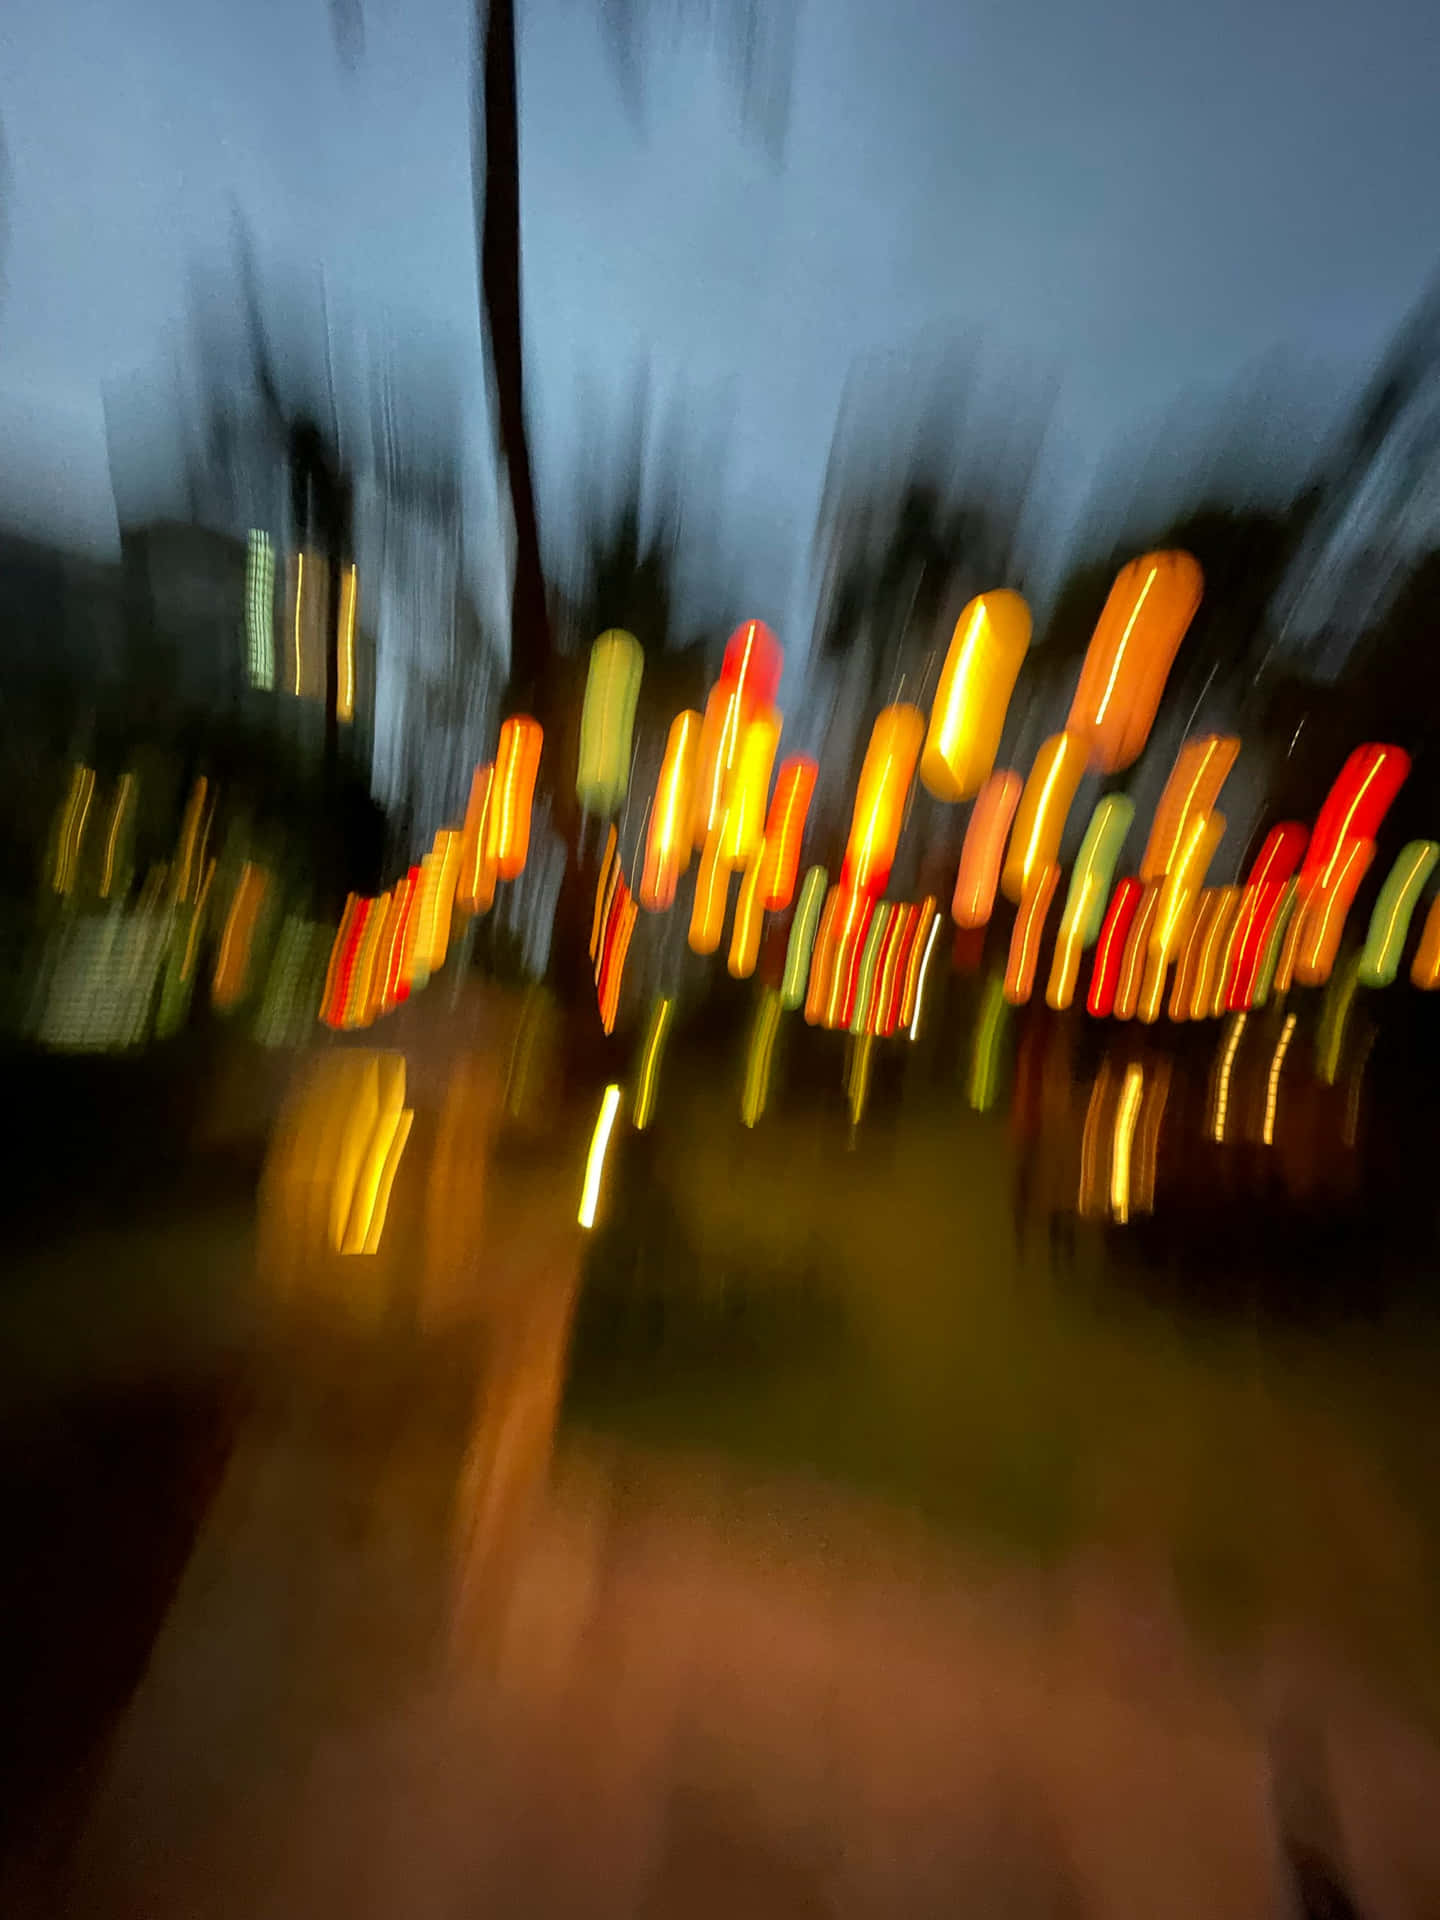 Abstract Urban Lights Blur.jpg Wallpaper